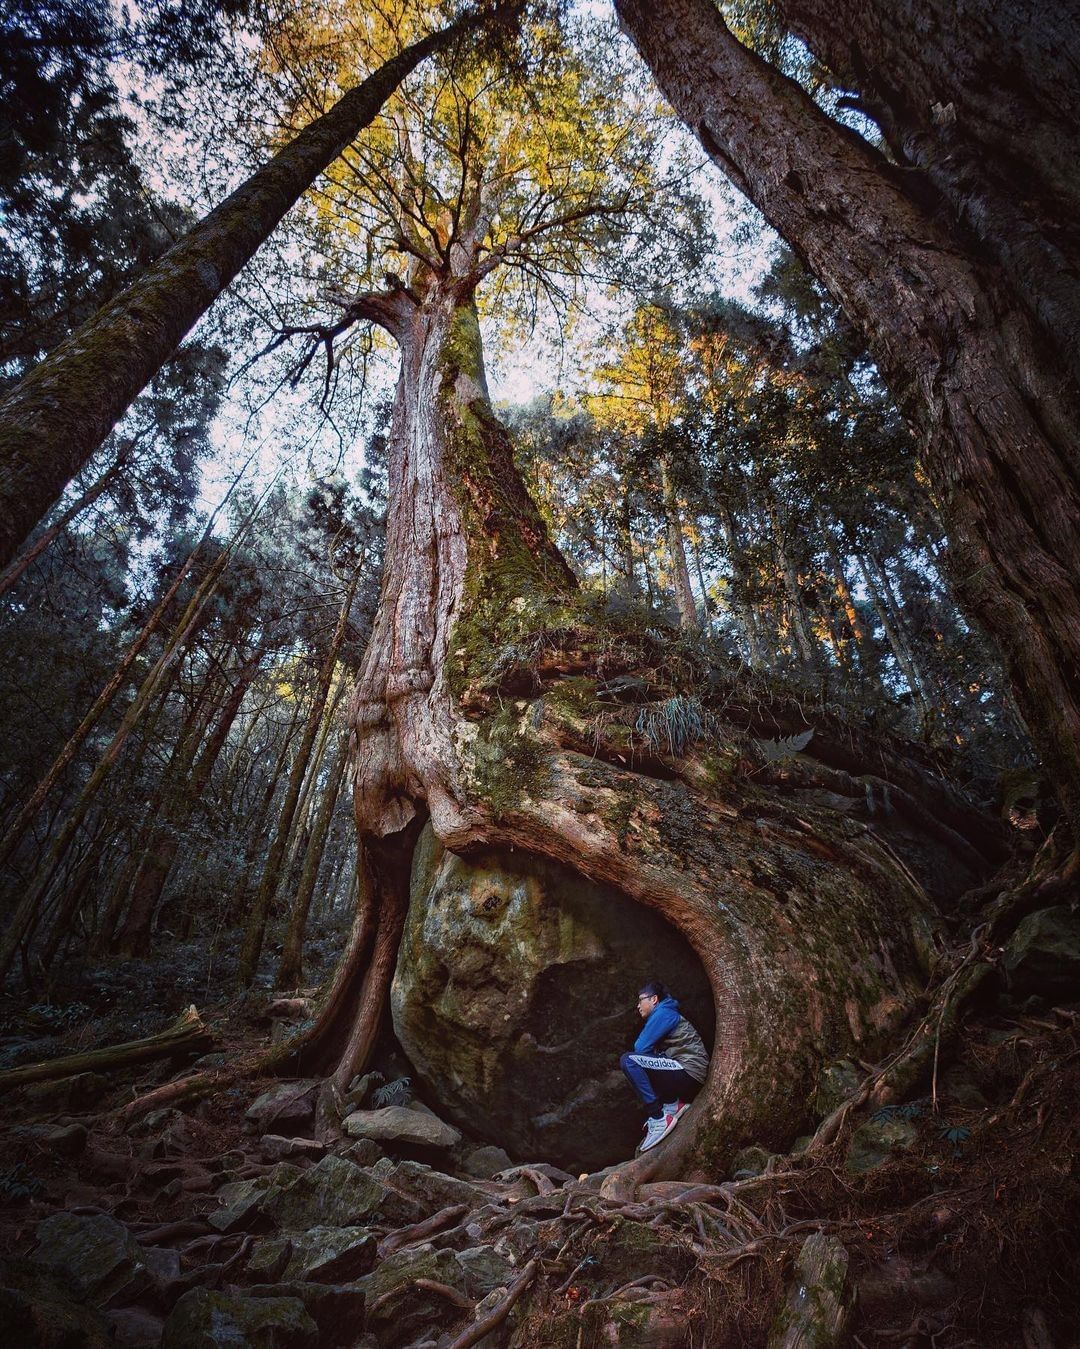 懷念的森林❤你多久沒上山了呢照片授權 @kobe_weng24 -⠀歡迎在您的貼文 #travelalishan 或 @trave...